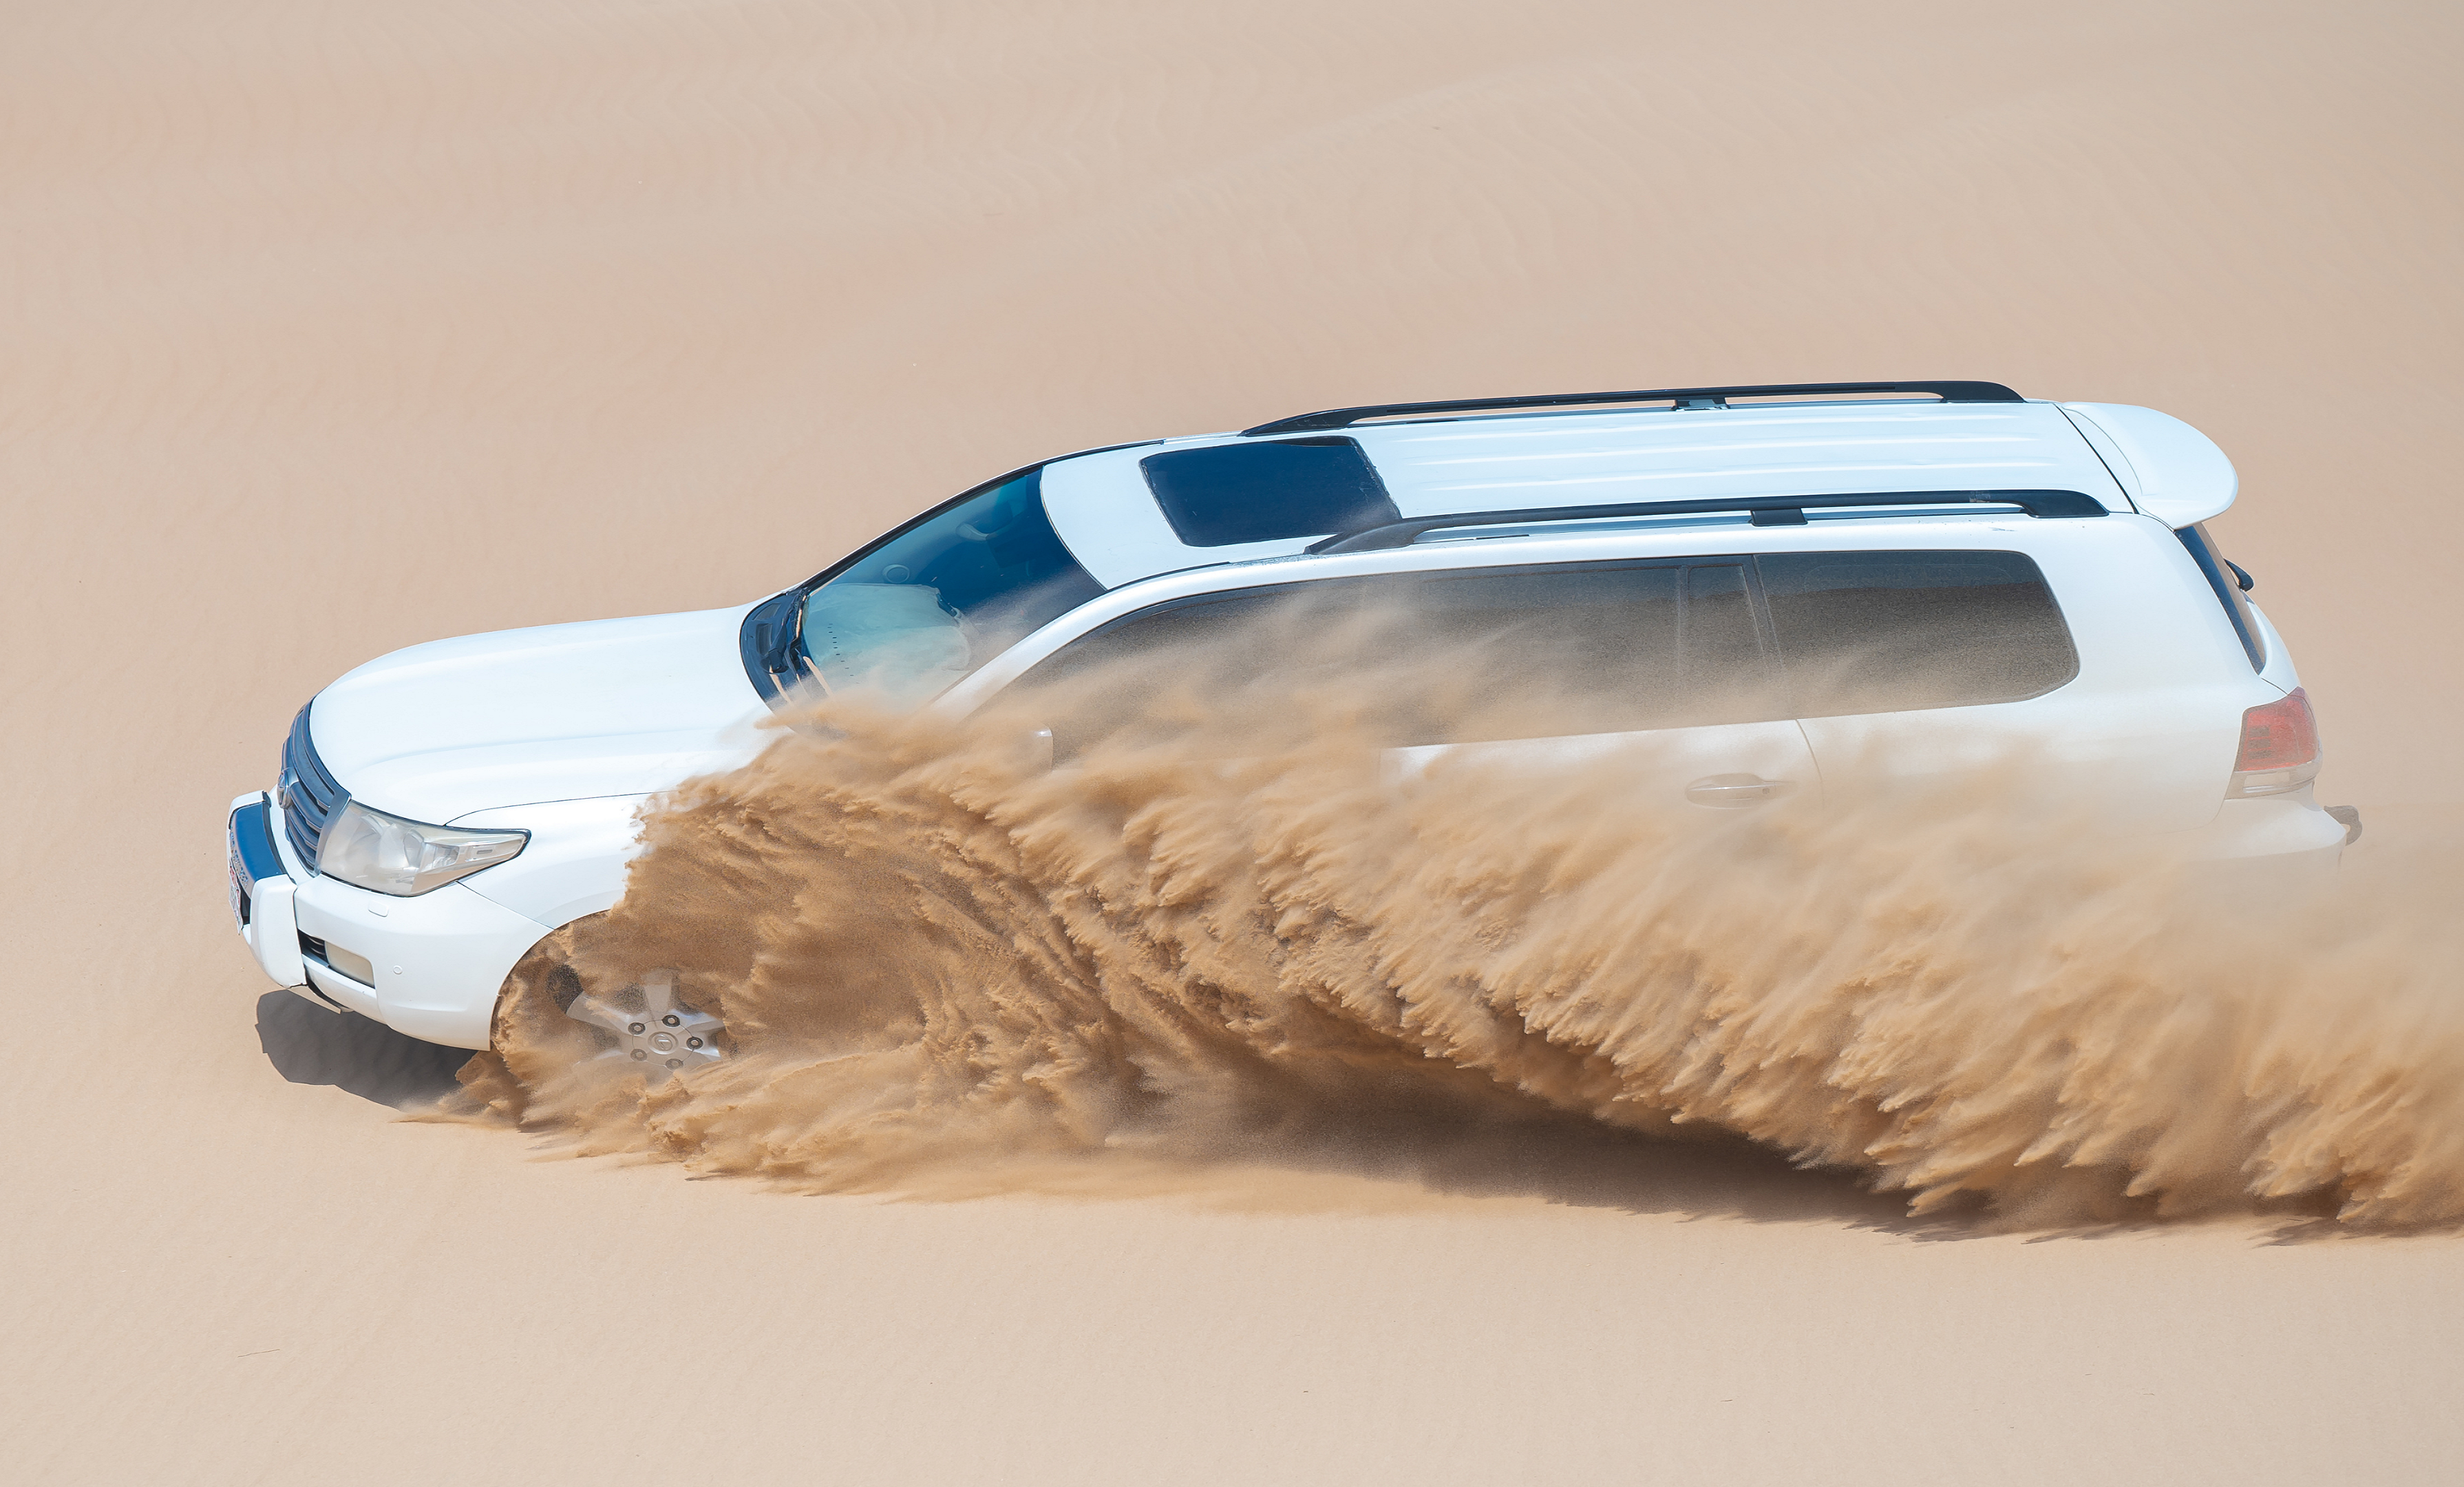 Desert Dune Tours